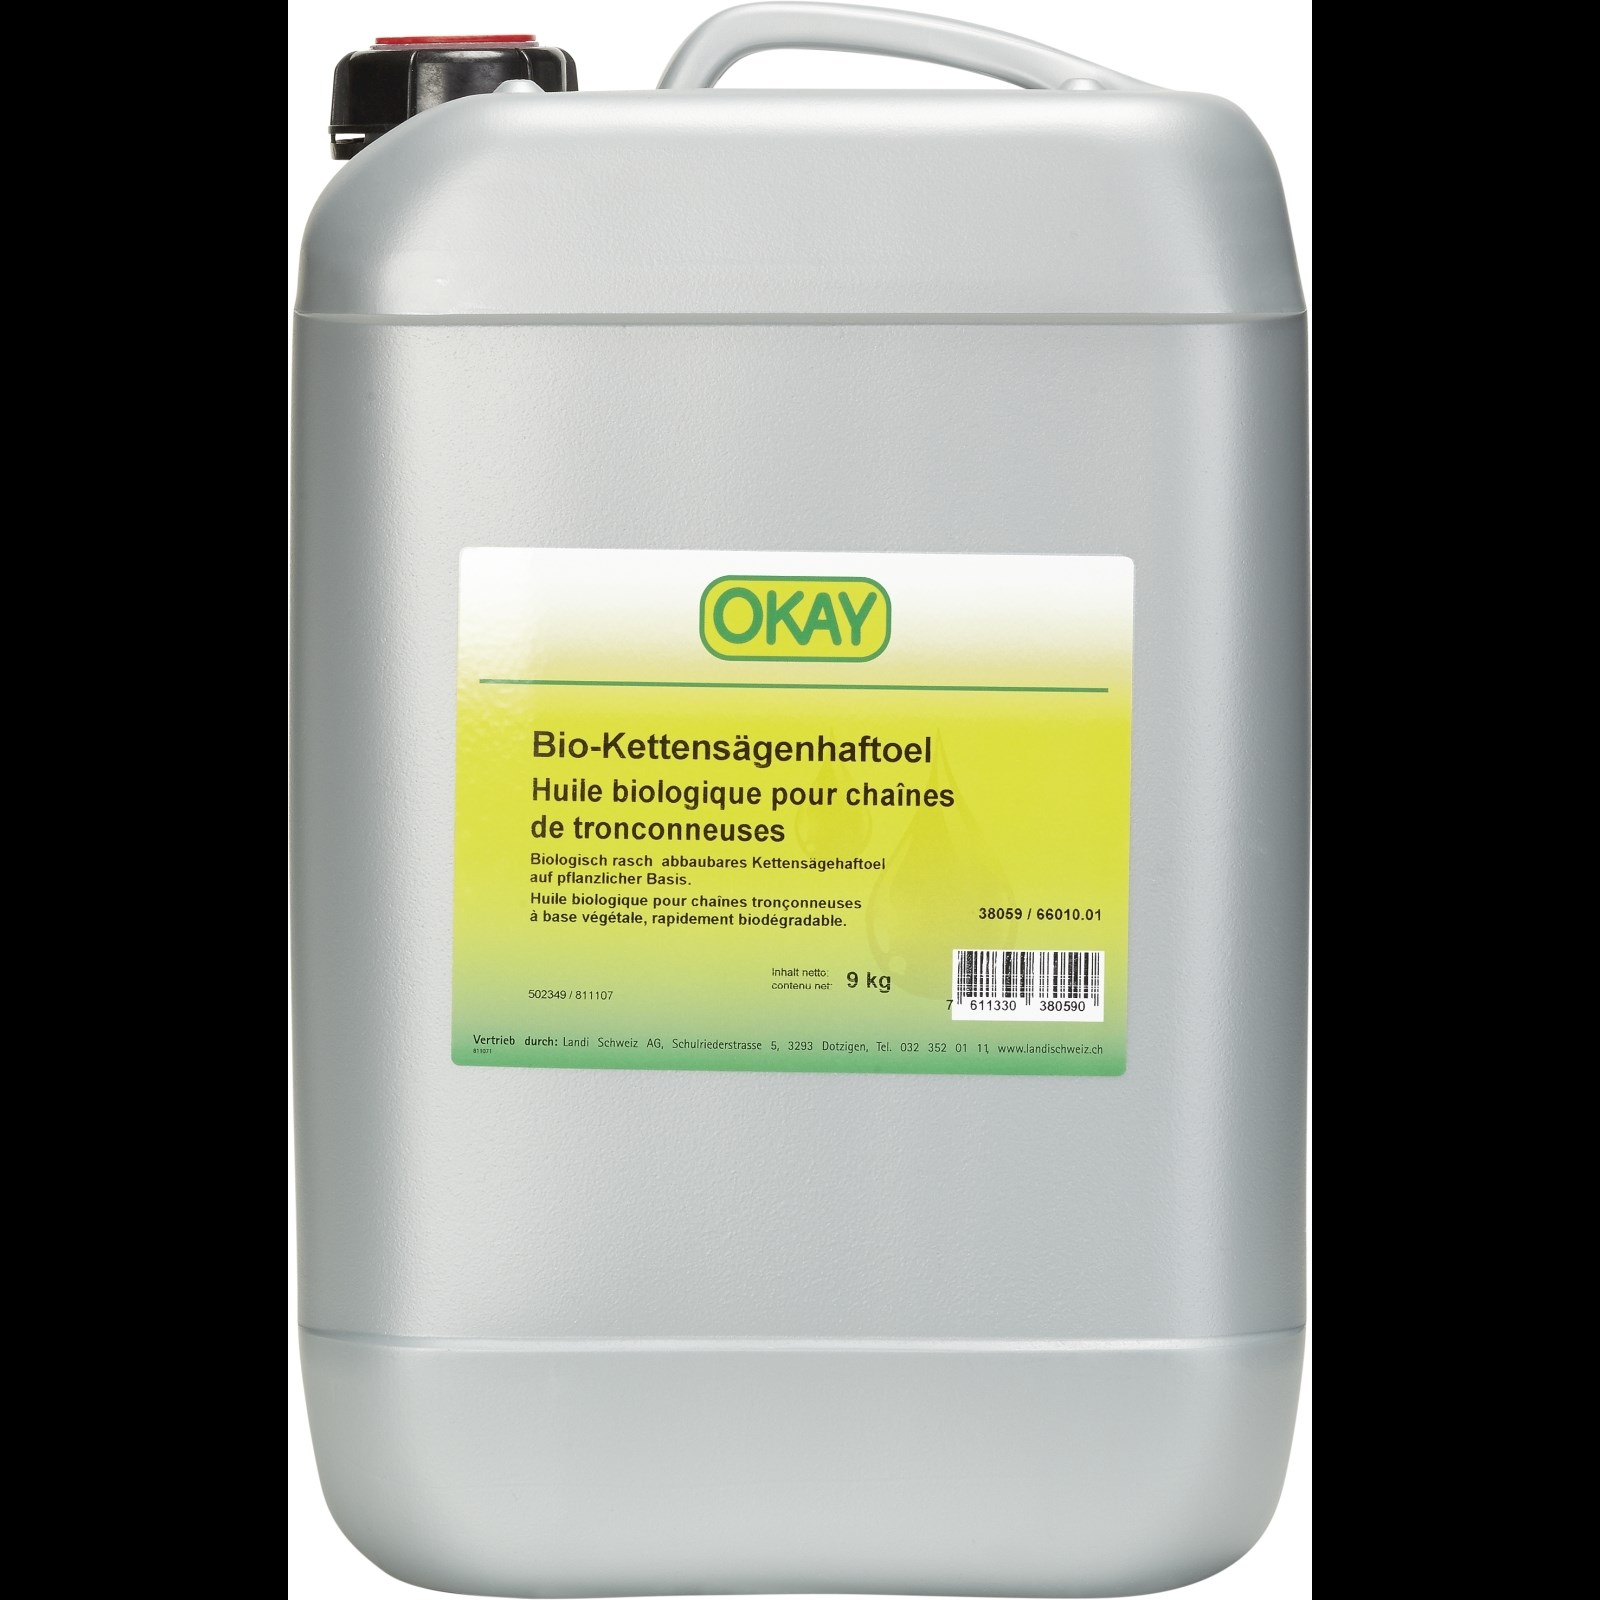 Kettensägenhaftöl Bio Okay 9 kg kaufen - Motorenöle - LANDI